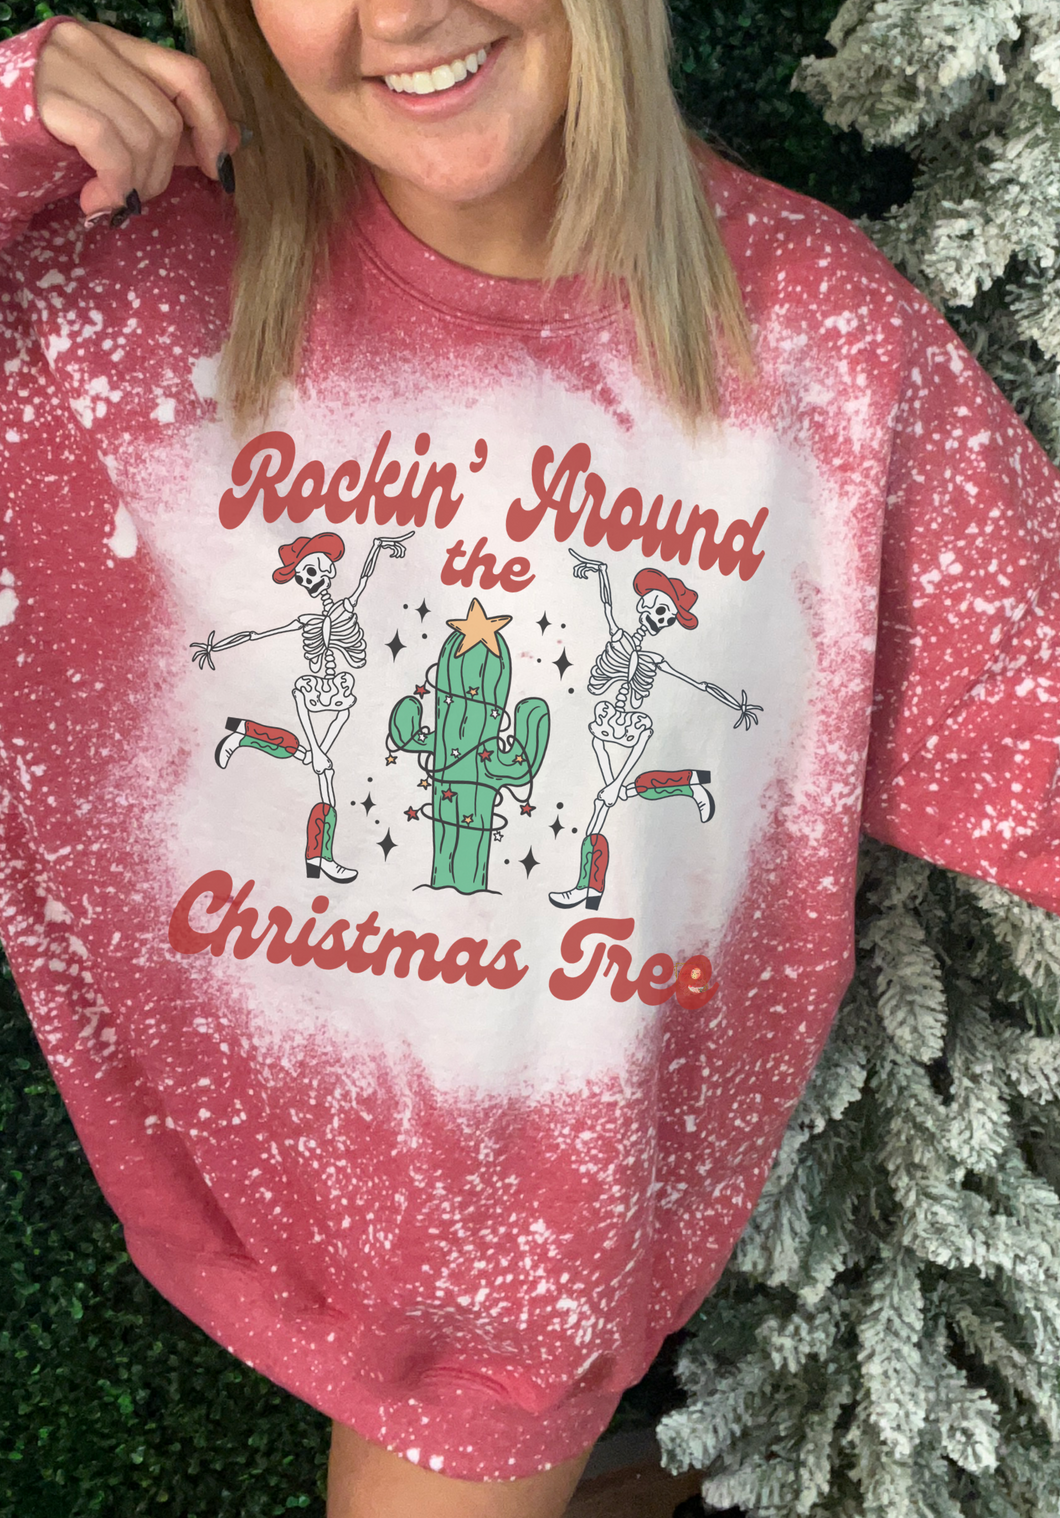 Rockin’ around the Christmas tree cactus